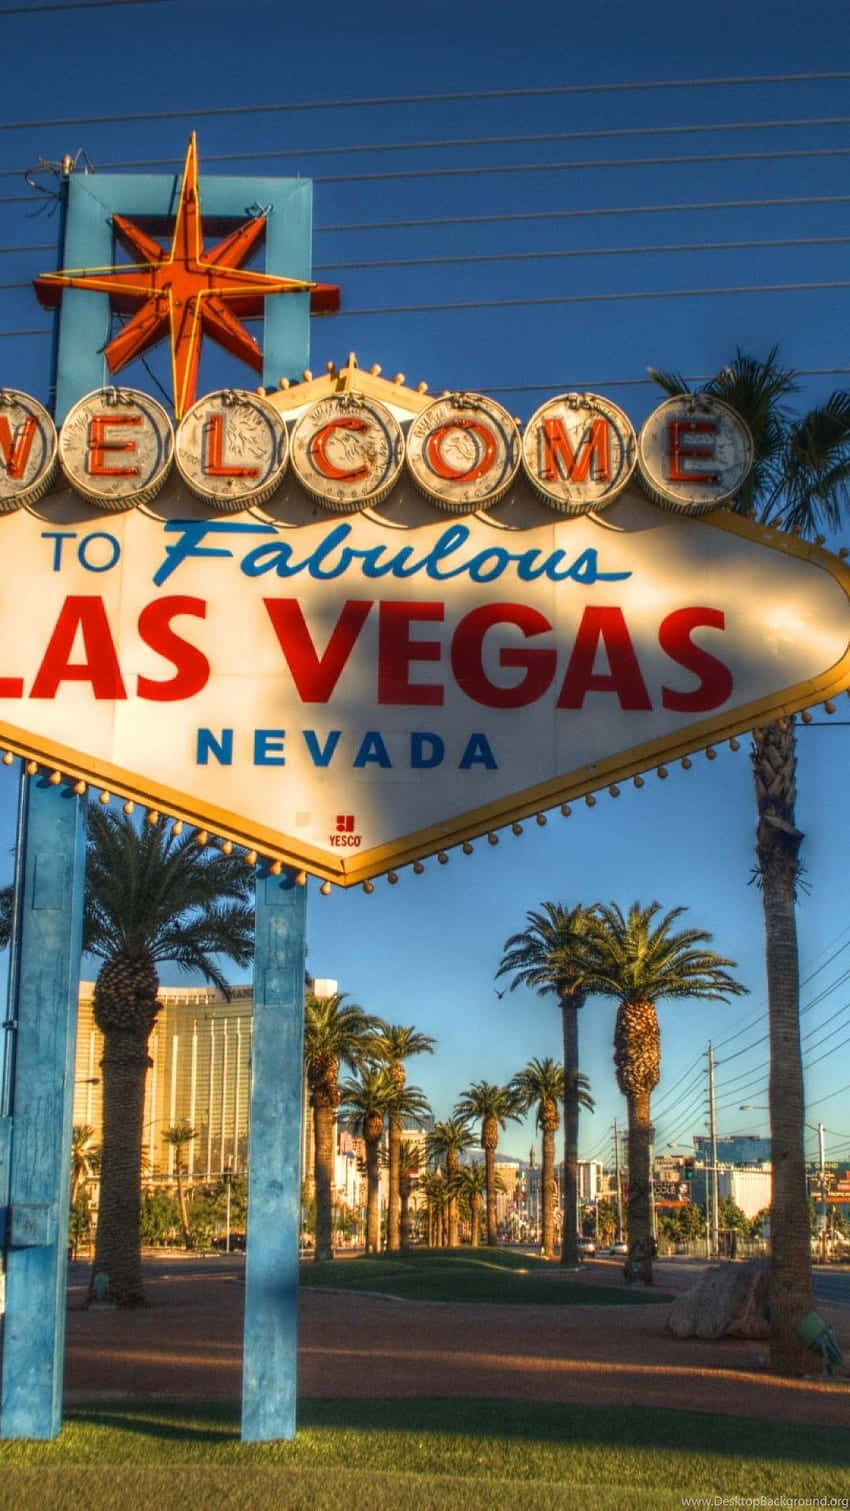 Hintergrundbildfür Computer Oder Mobiltelefon: Willkommen In Las Vegas, Portrait-schild